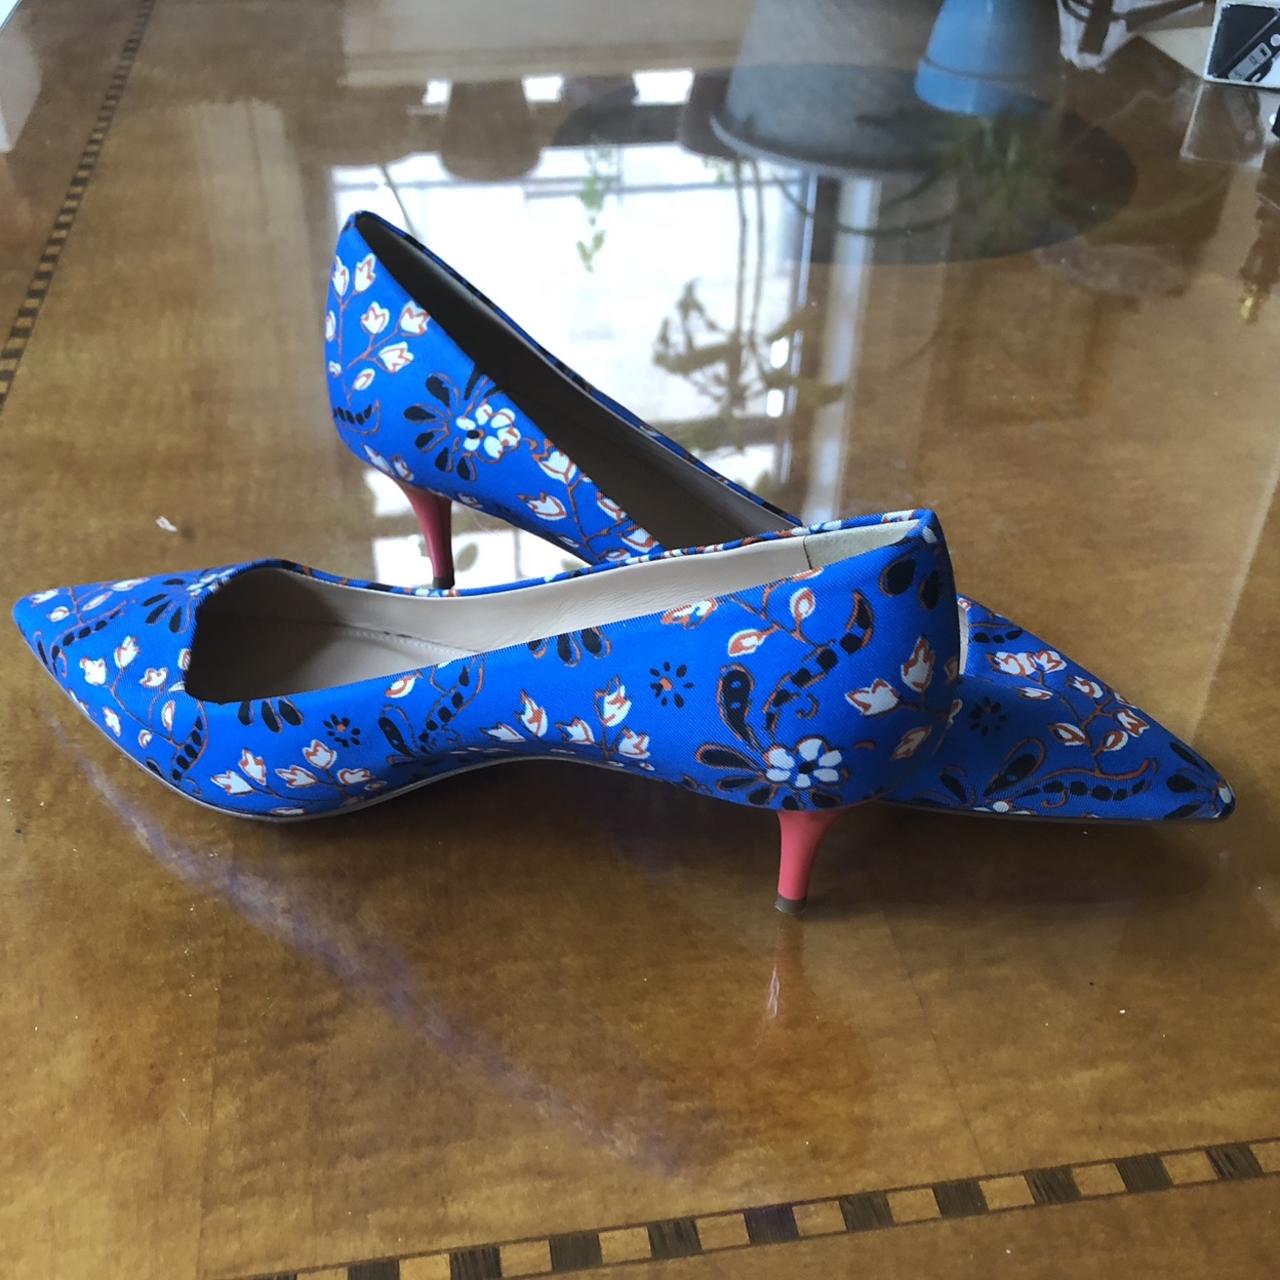 Louis Vuitton denim kitten heels! Super cute, worn - Depop